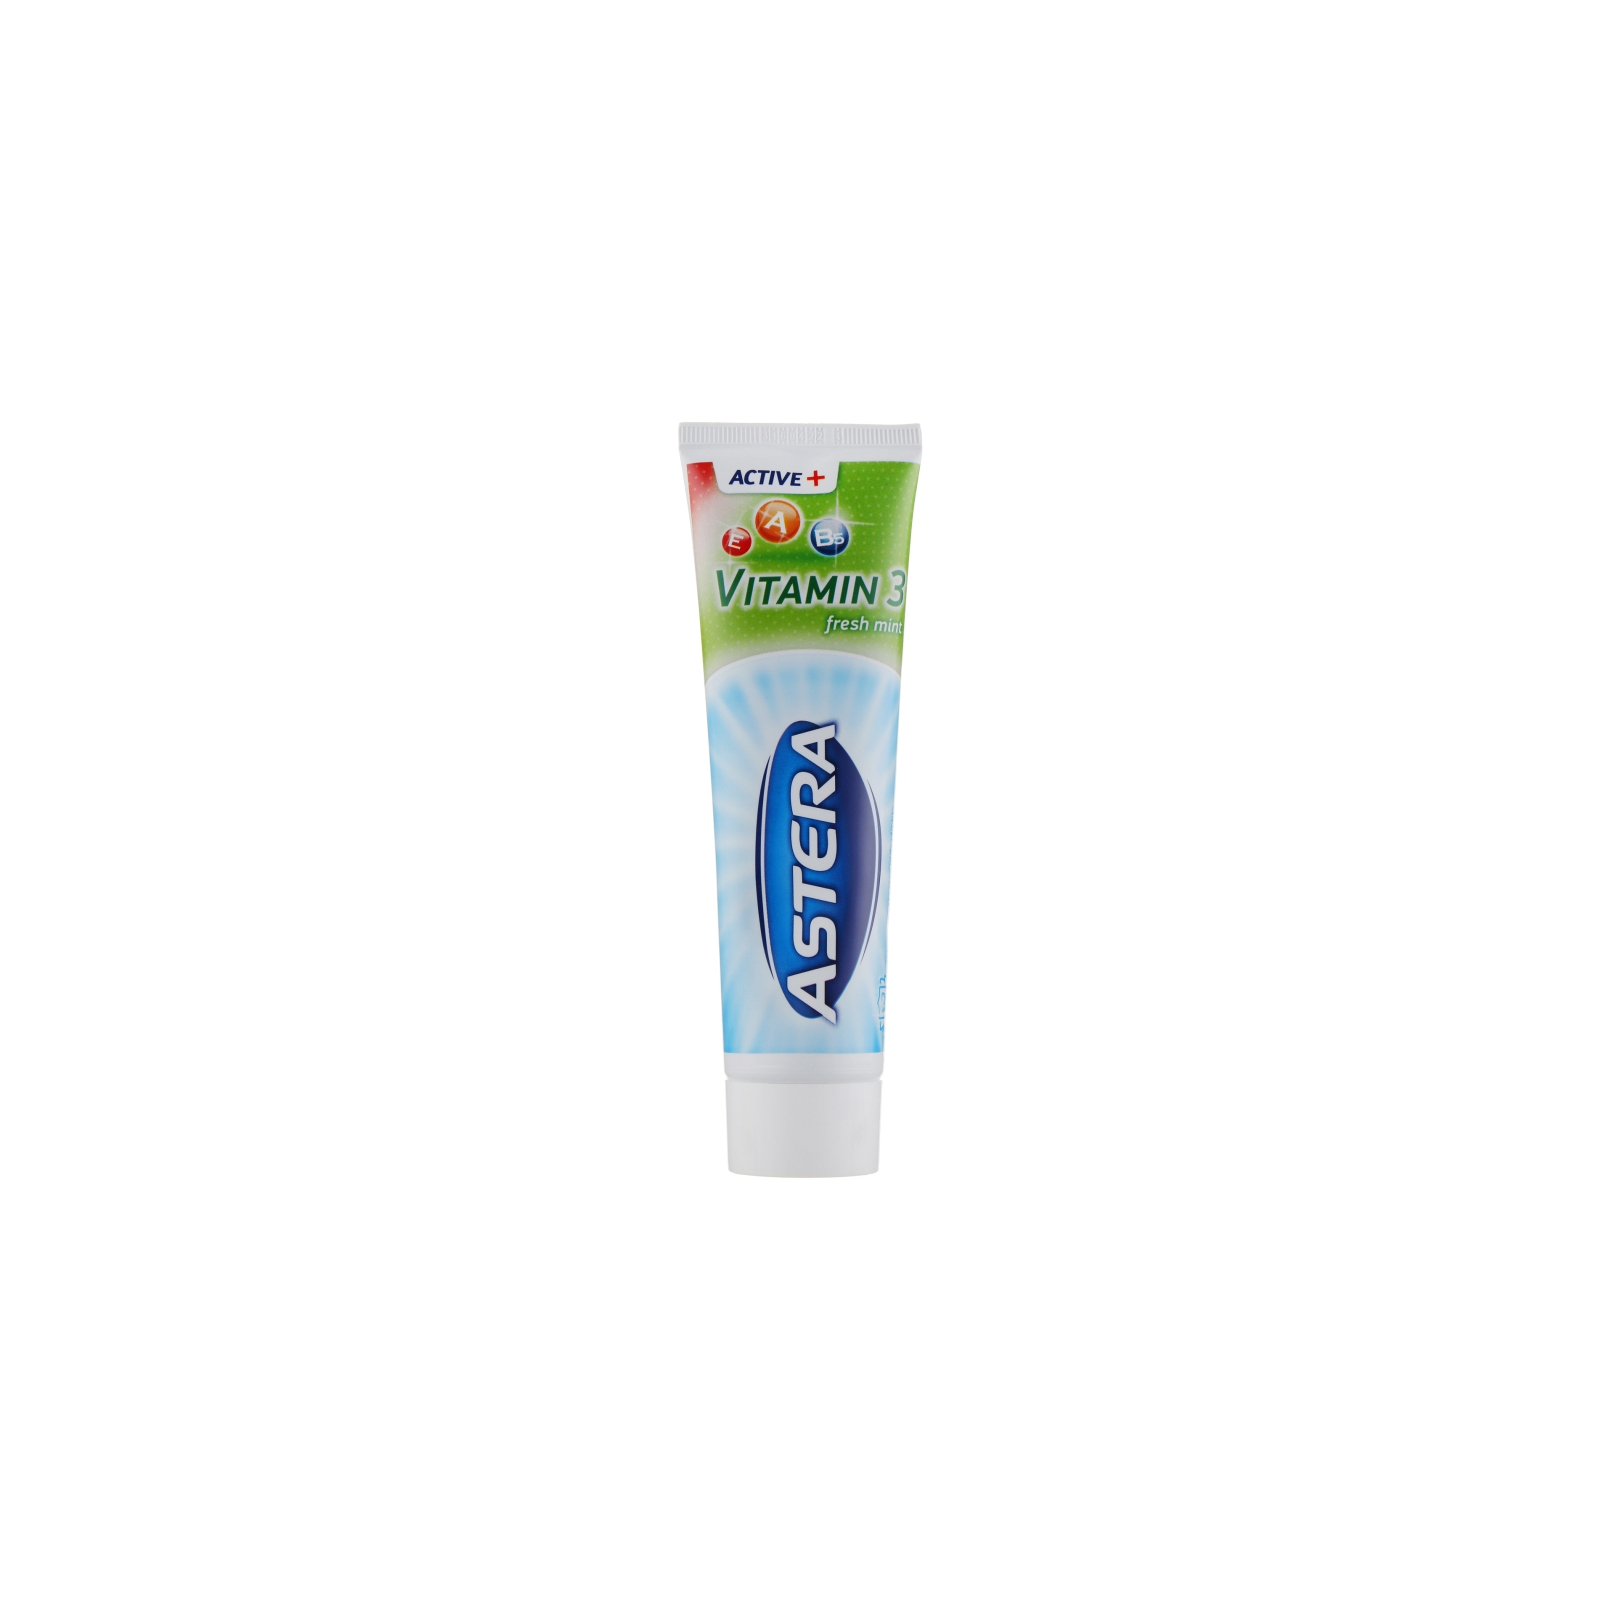 Зубна паста Astera Active+ Vitamin 3 Fresh Mint з вітамінами 100 мл (3800013510988)